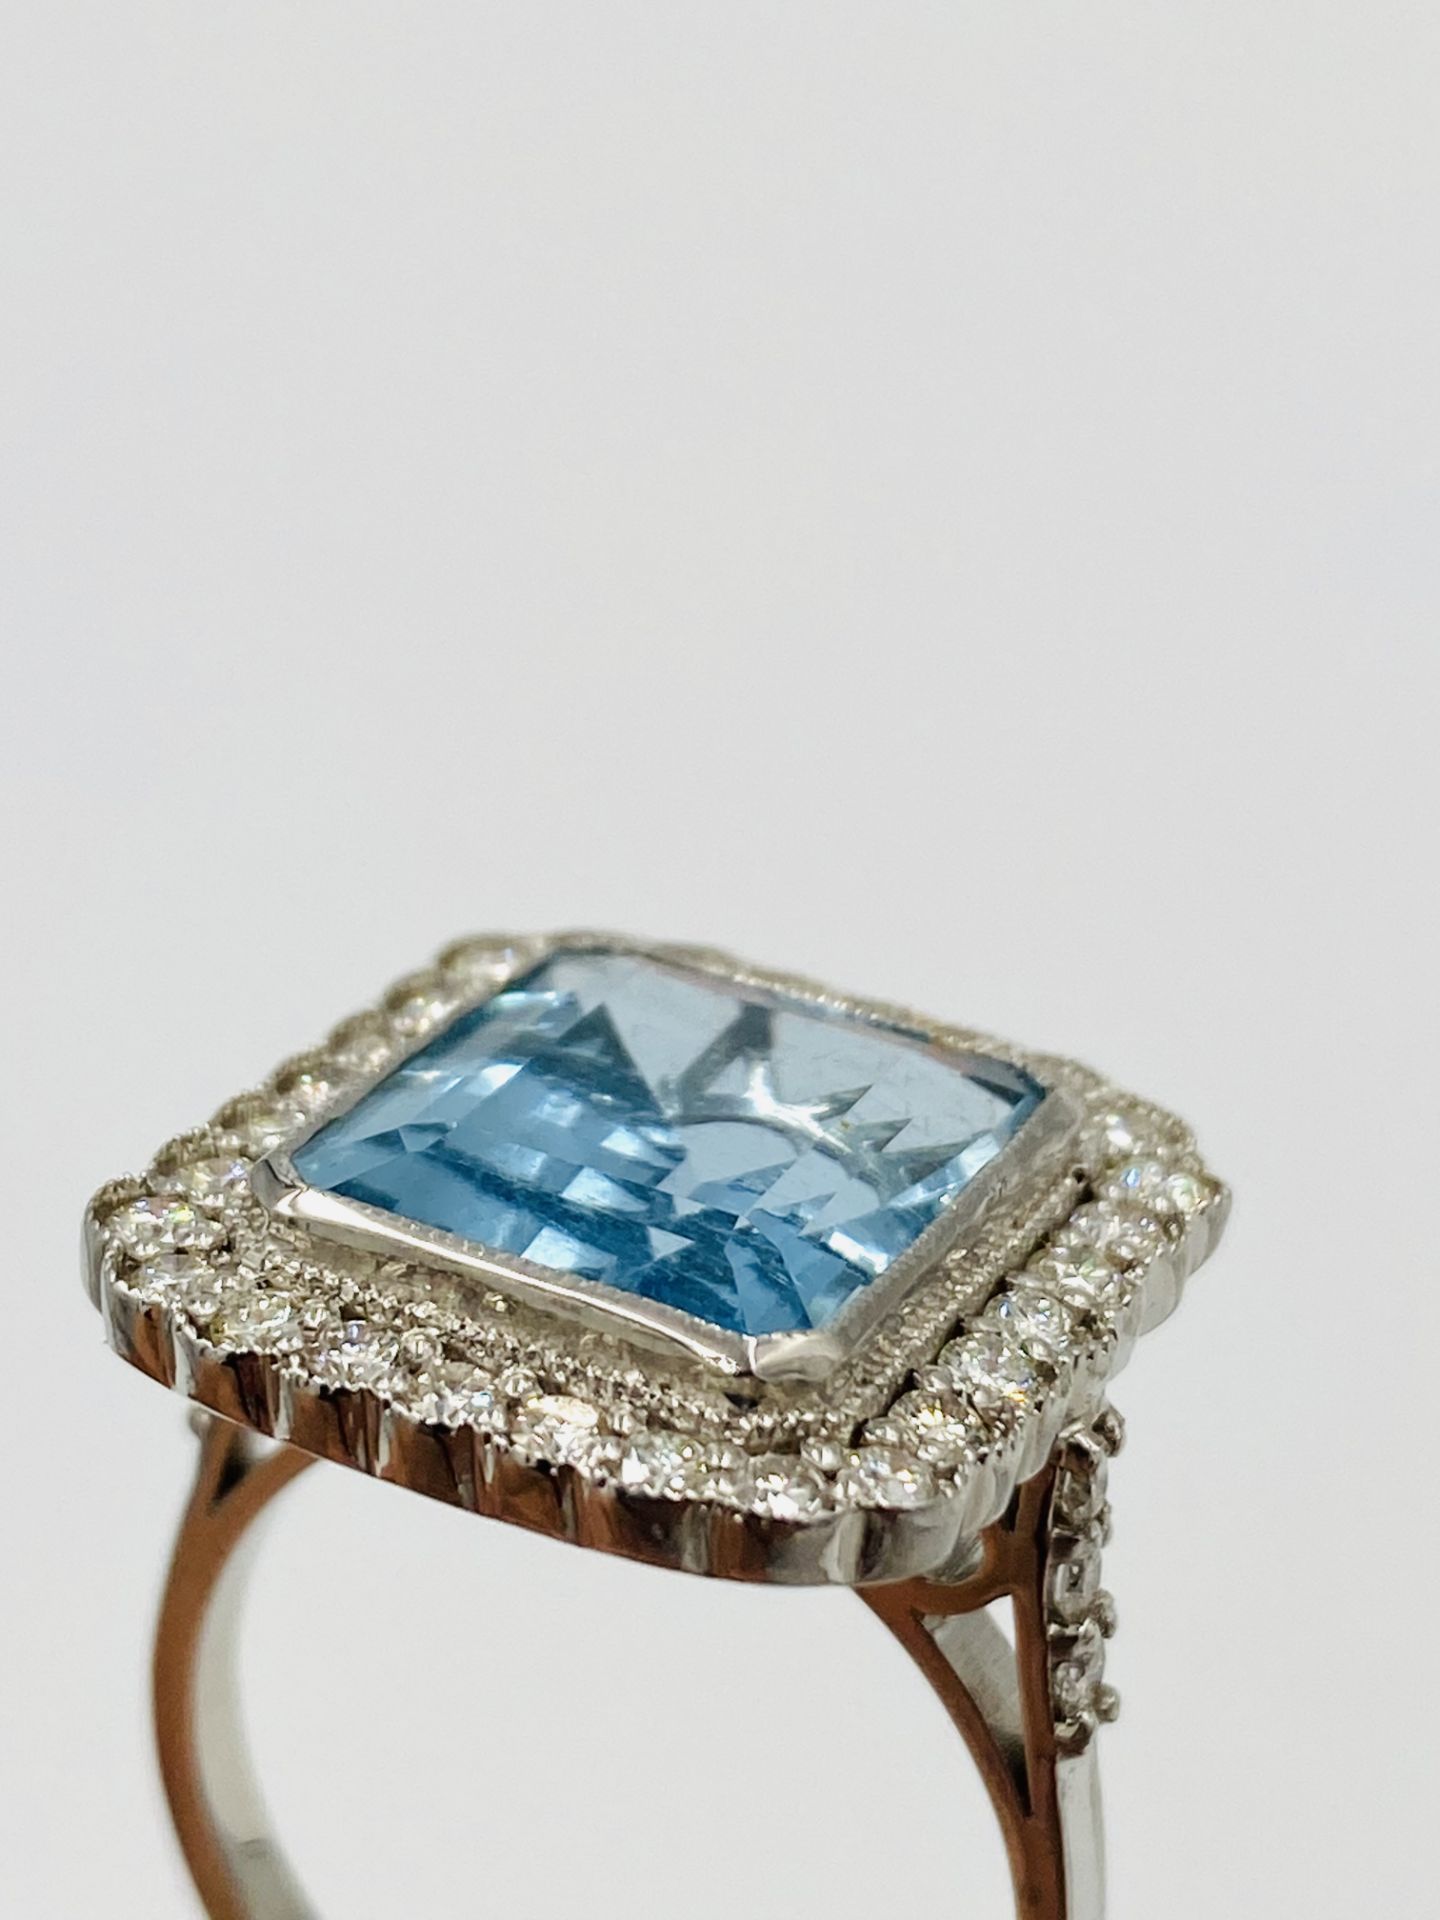 18ct white gold, aquamarine and diamond ring - Image 5 of 5